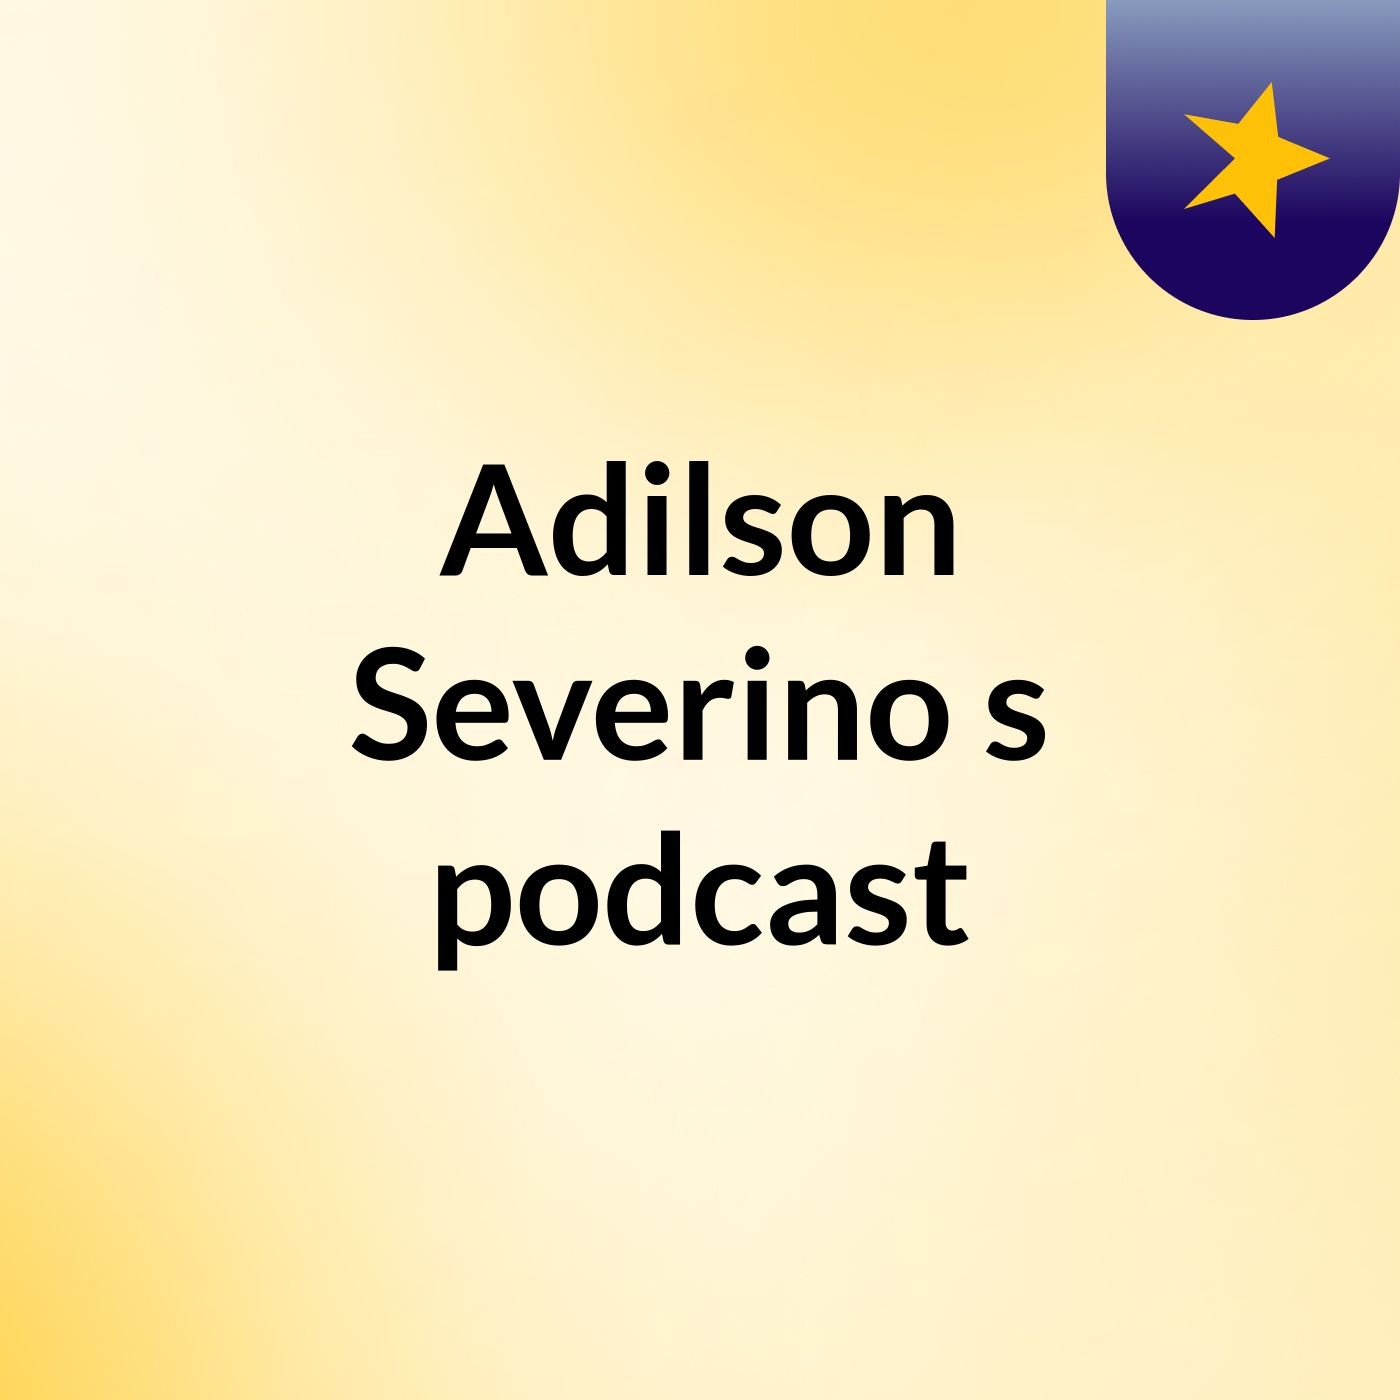 Adilson Severino's podcast